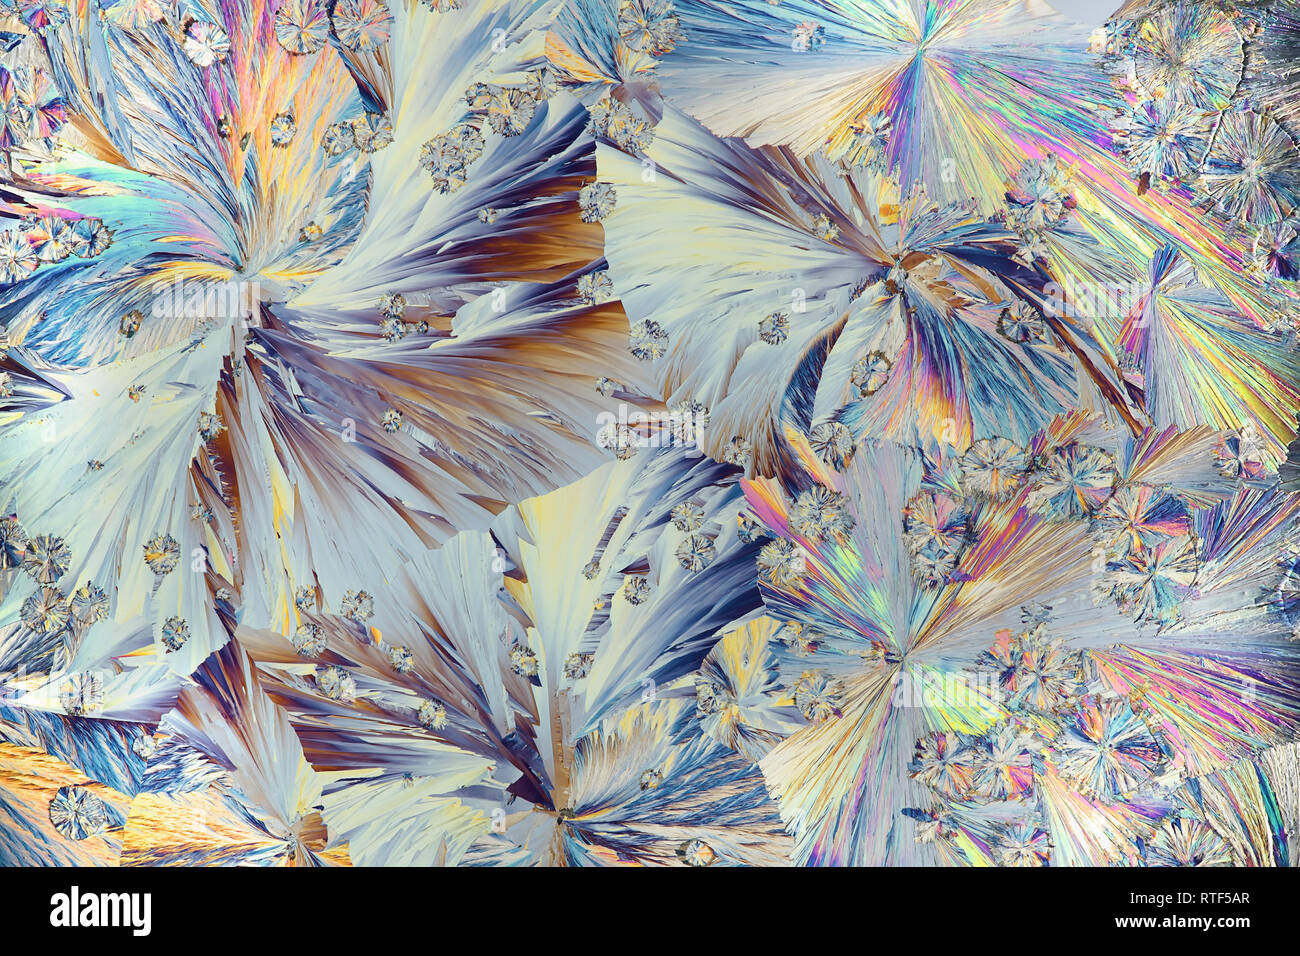 Kristalle von Konservierungsmittel, Zitronensäure, Mikroskop Bild fotografiert in Cross-polarisiertem Licht Stockfoto